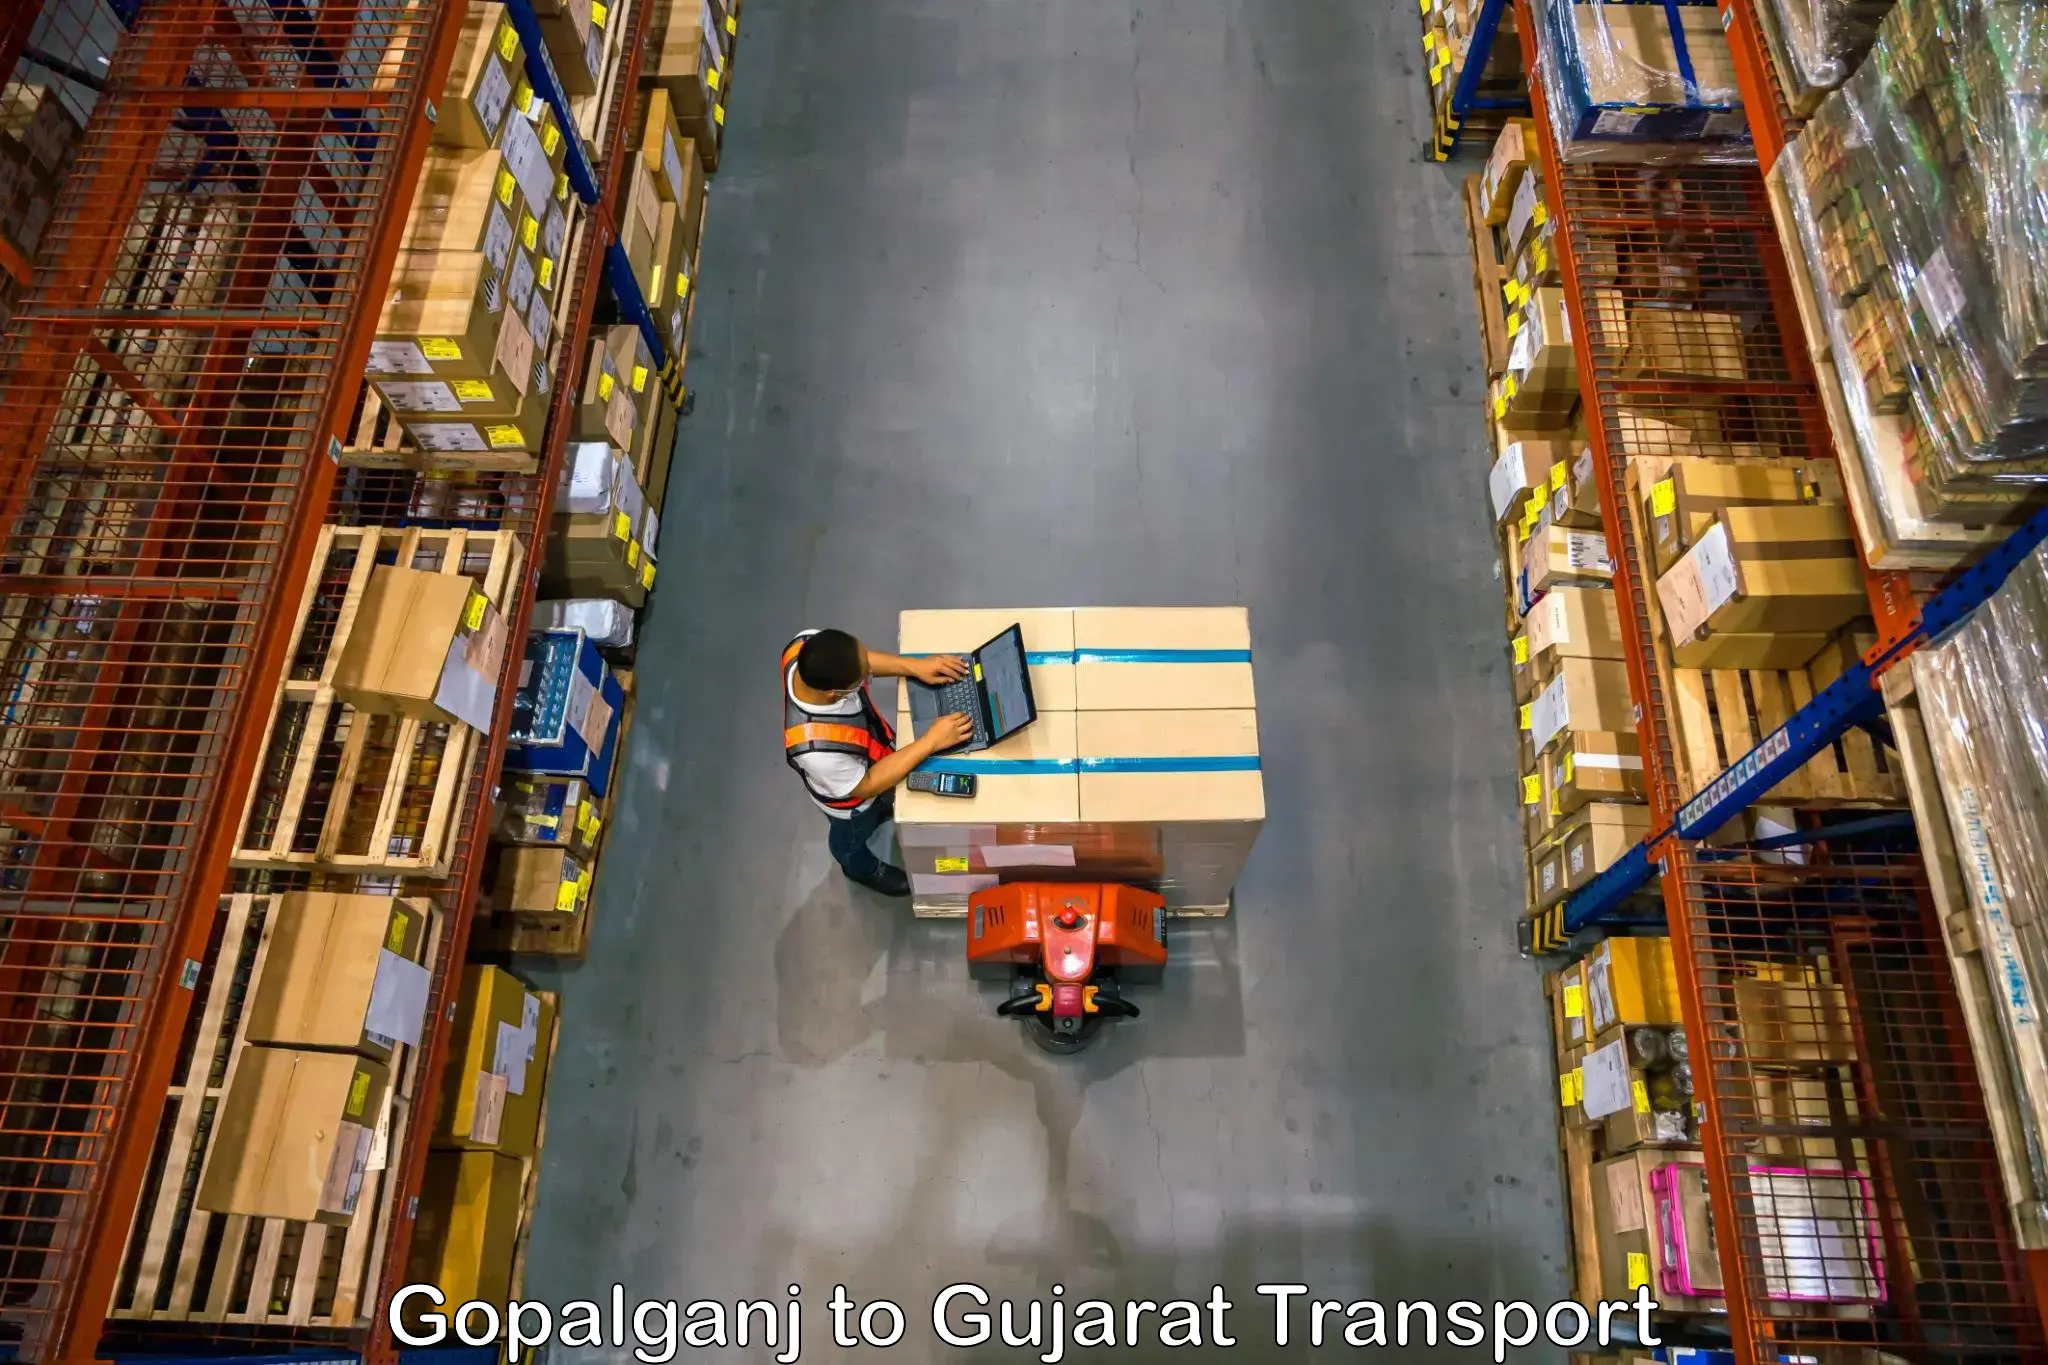 Goods delivery service Gopalganj to IIIT Surat